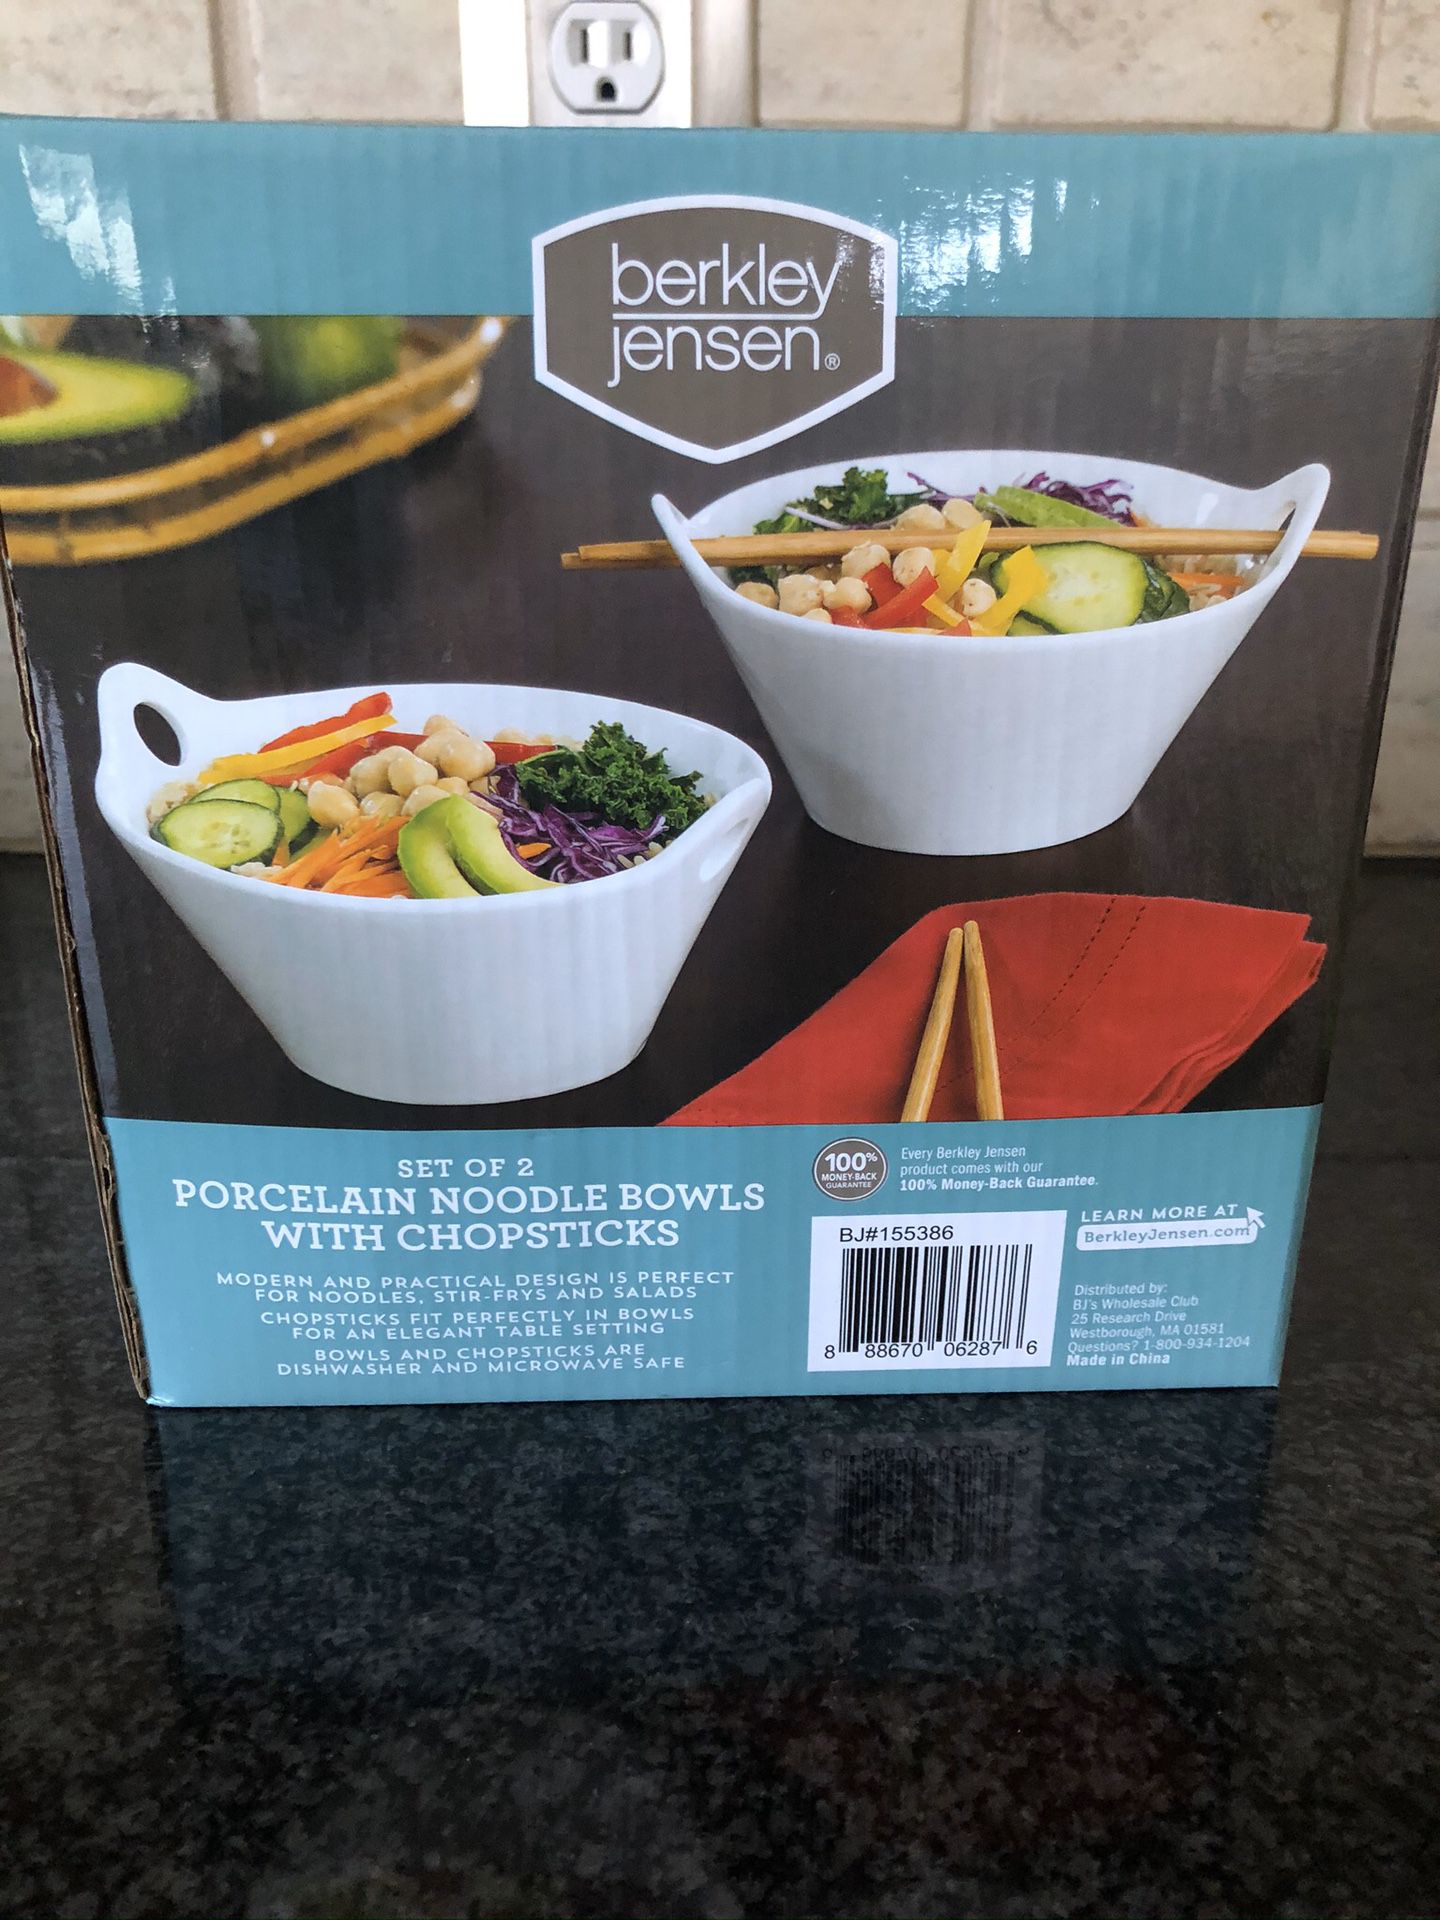 Set of 2 Porcelain Noodle Bowls with chopsticks